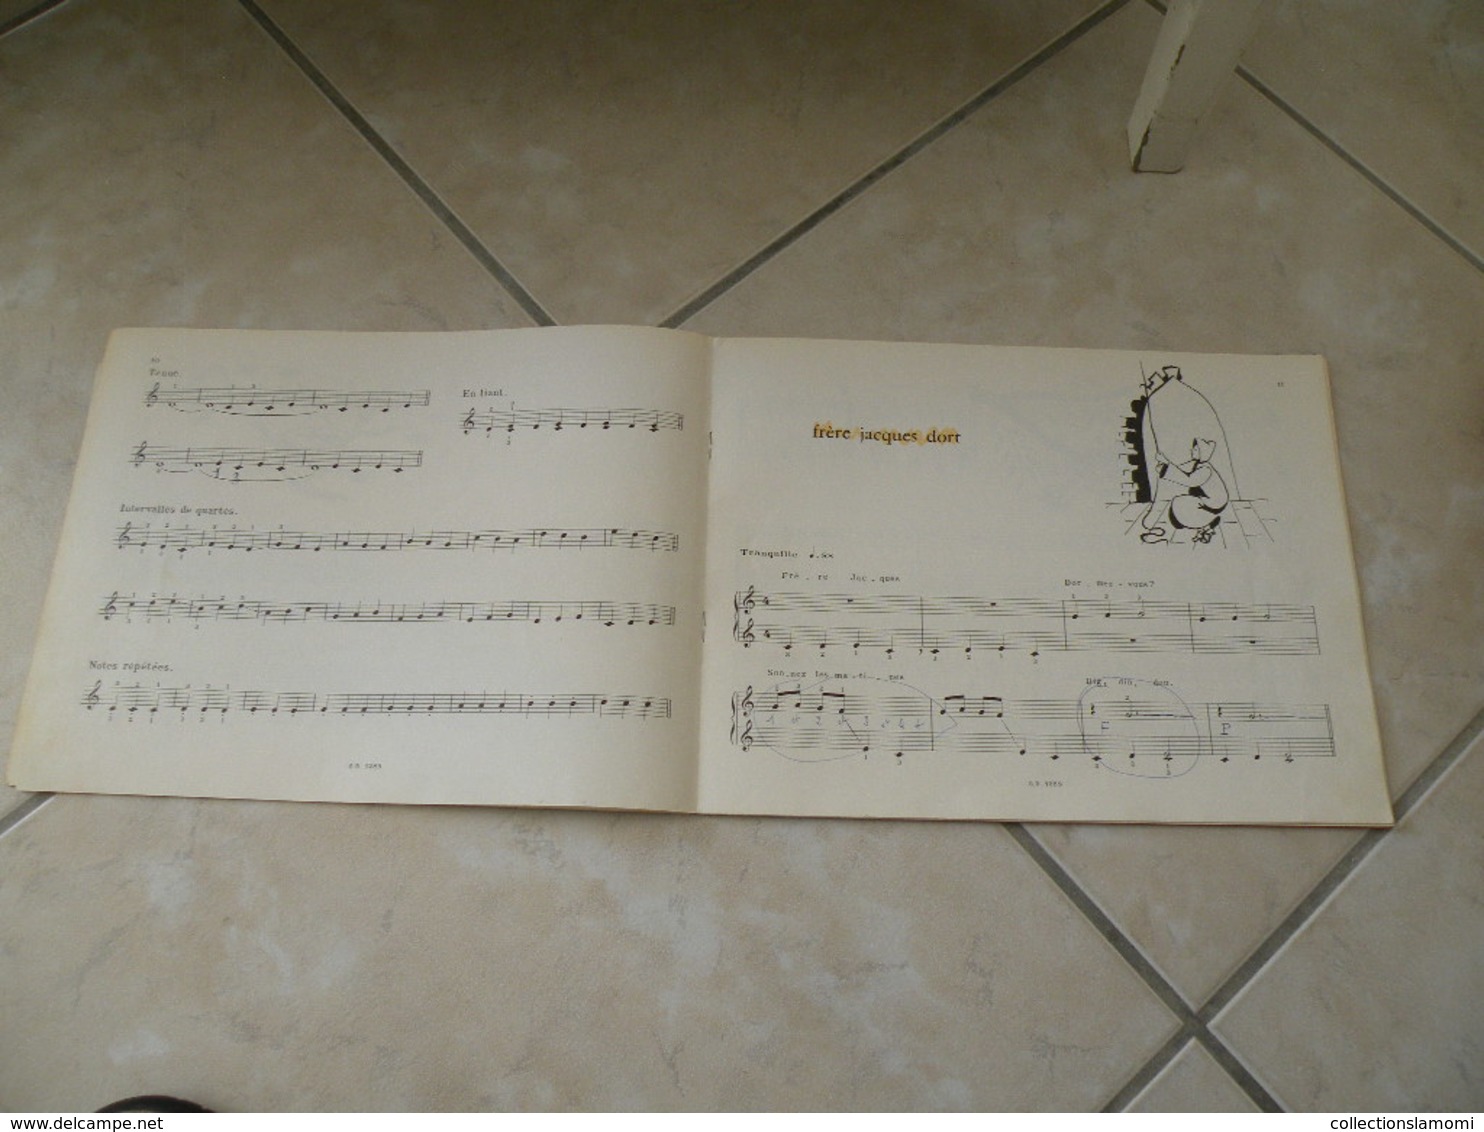 L'Enfant au clavier, méthode de piano illustrée - Musique (1)